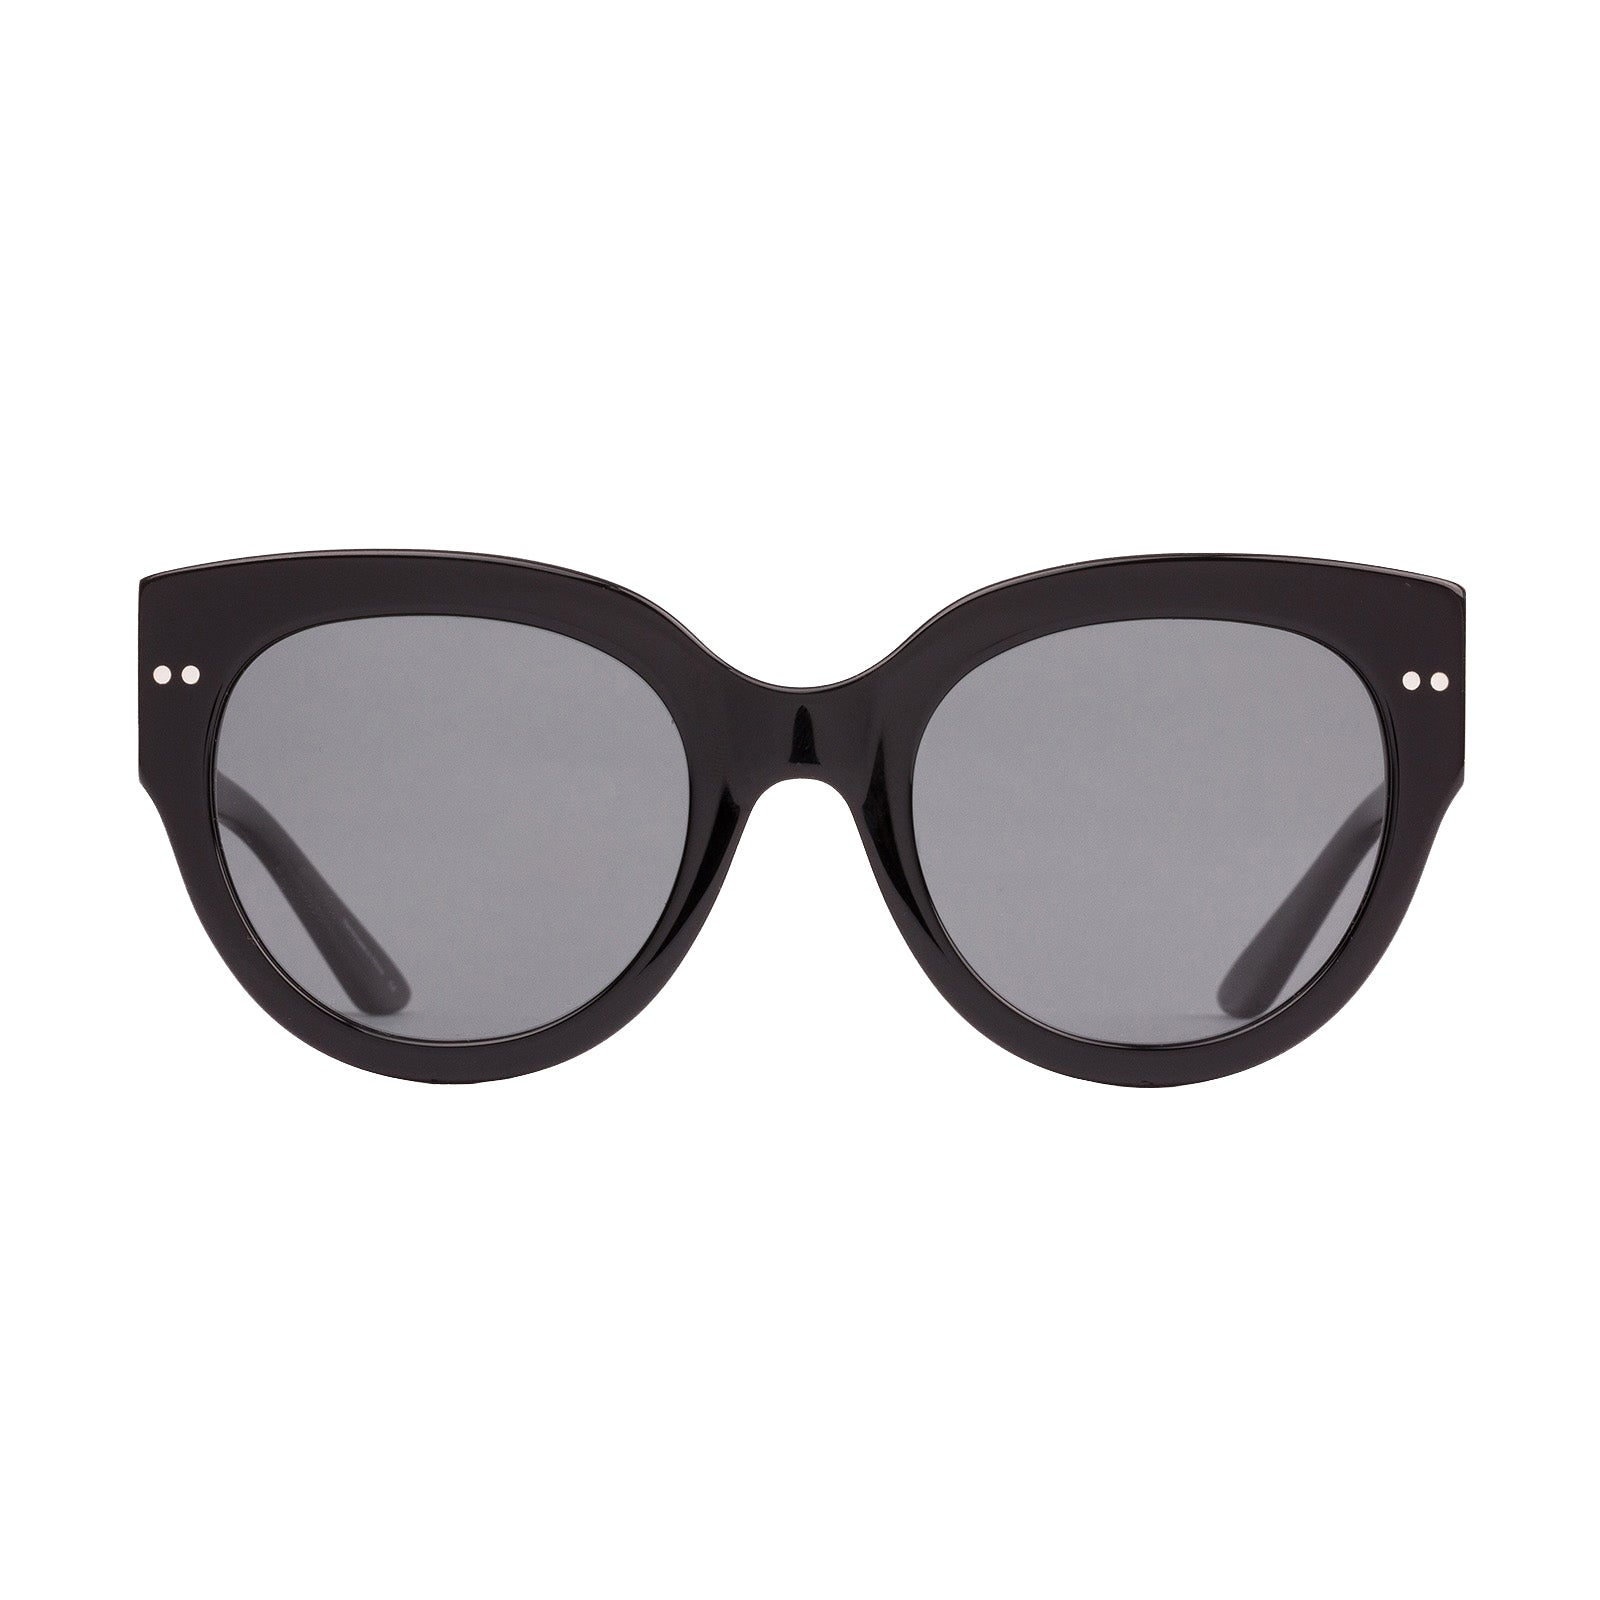 Sito Good Life Polarized Sunglasses Black IronGrey